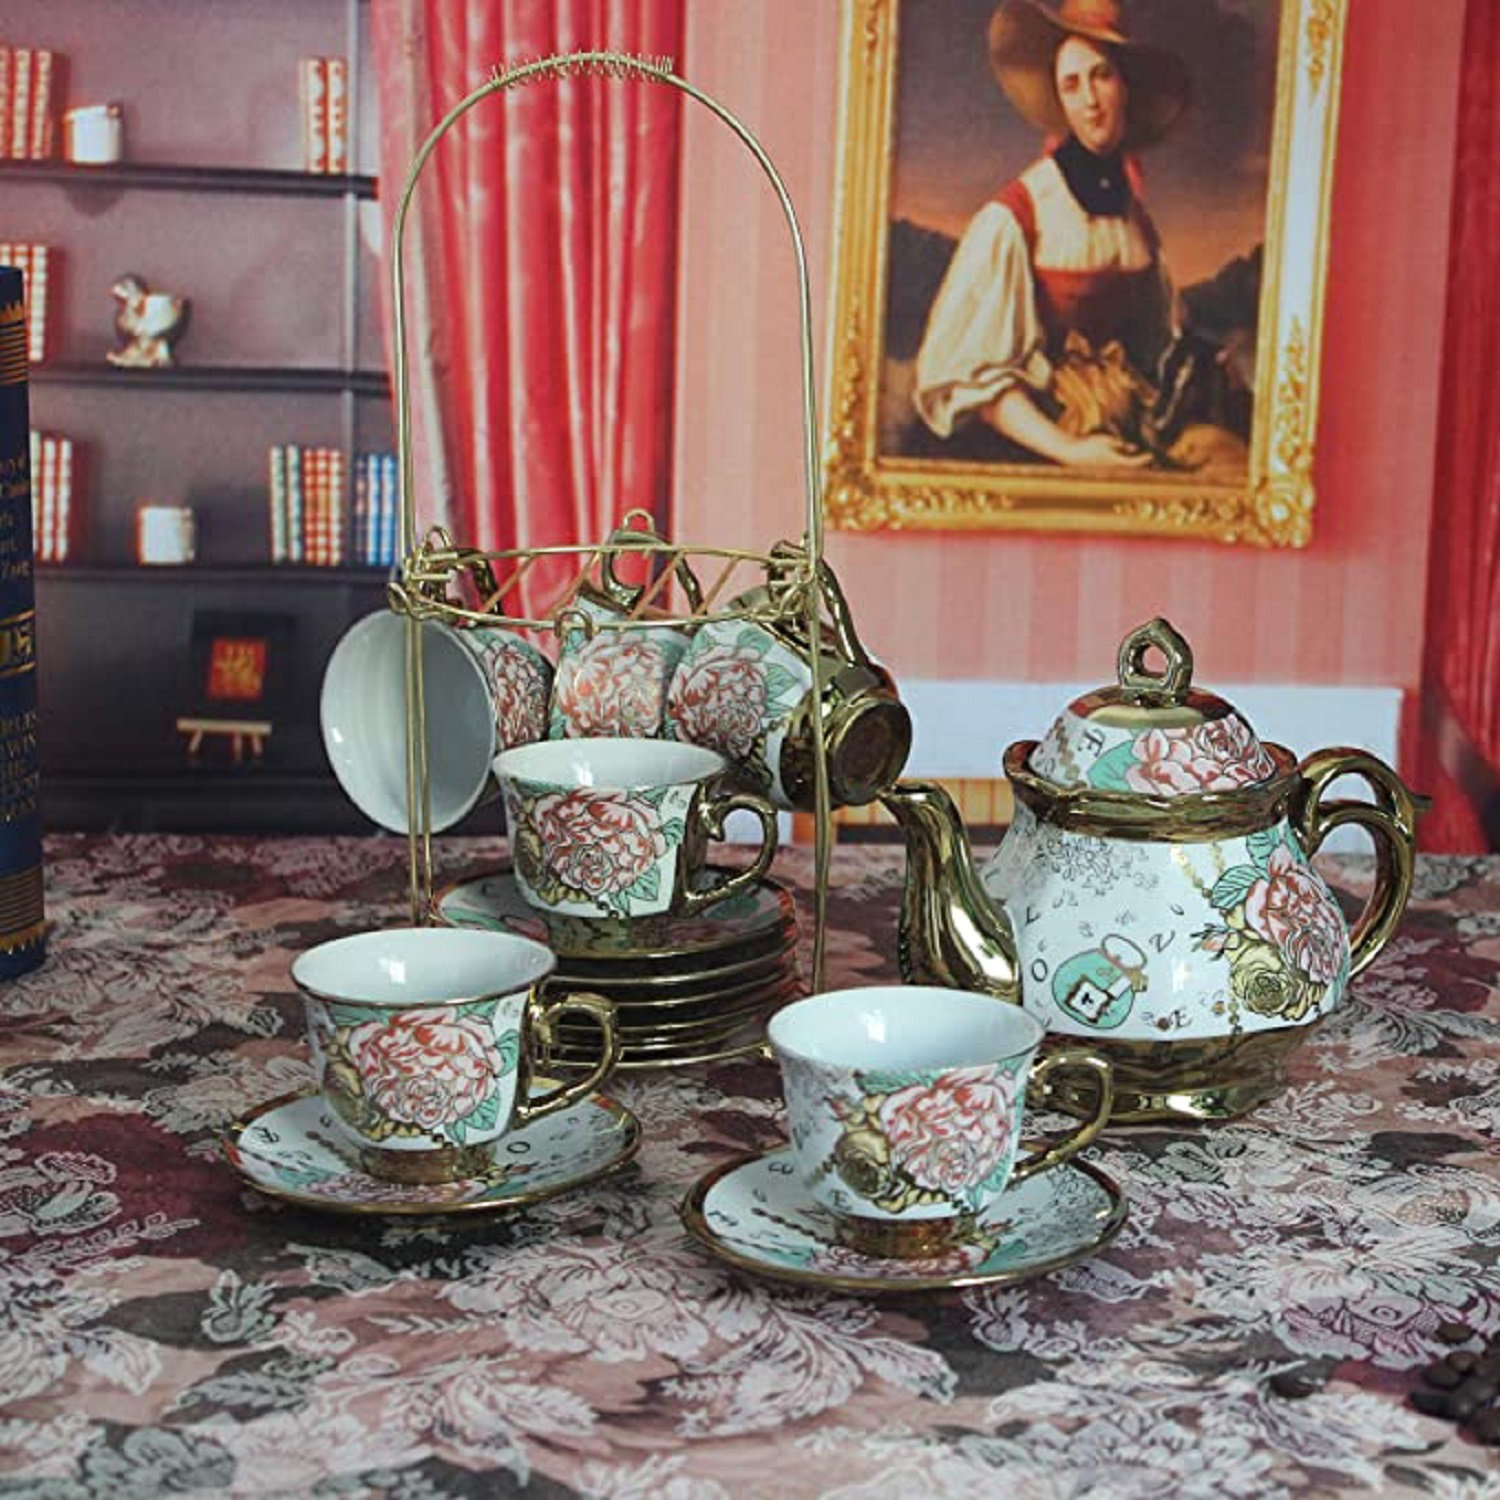 https://assets.wfcdn.com/im/55570196/compr-r85/2403/240346960/house-of-hampton-fagen-15oz-floral-teapot-set.jpg